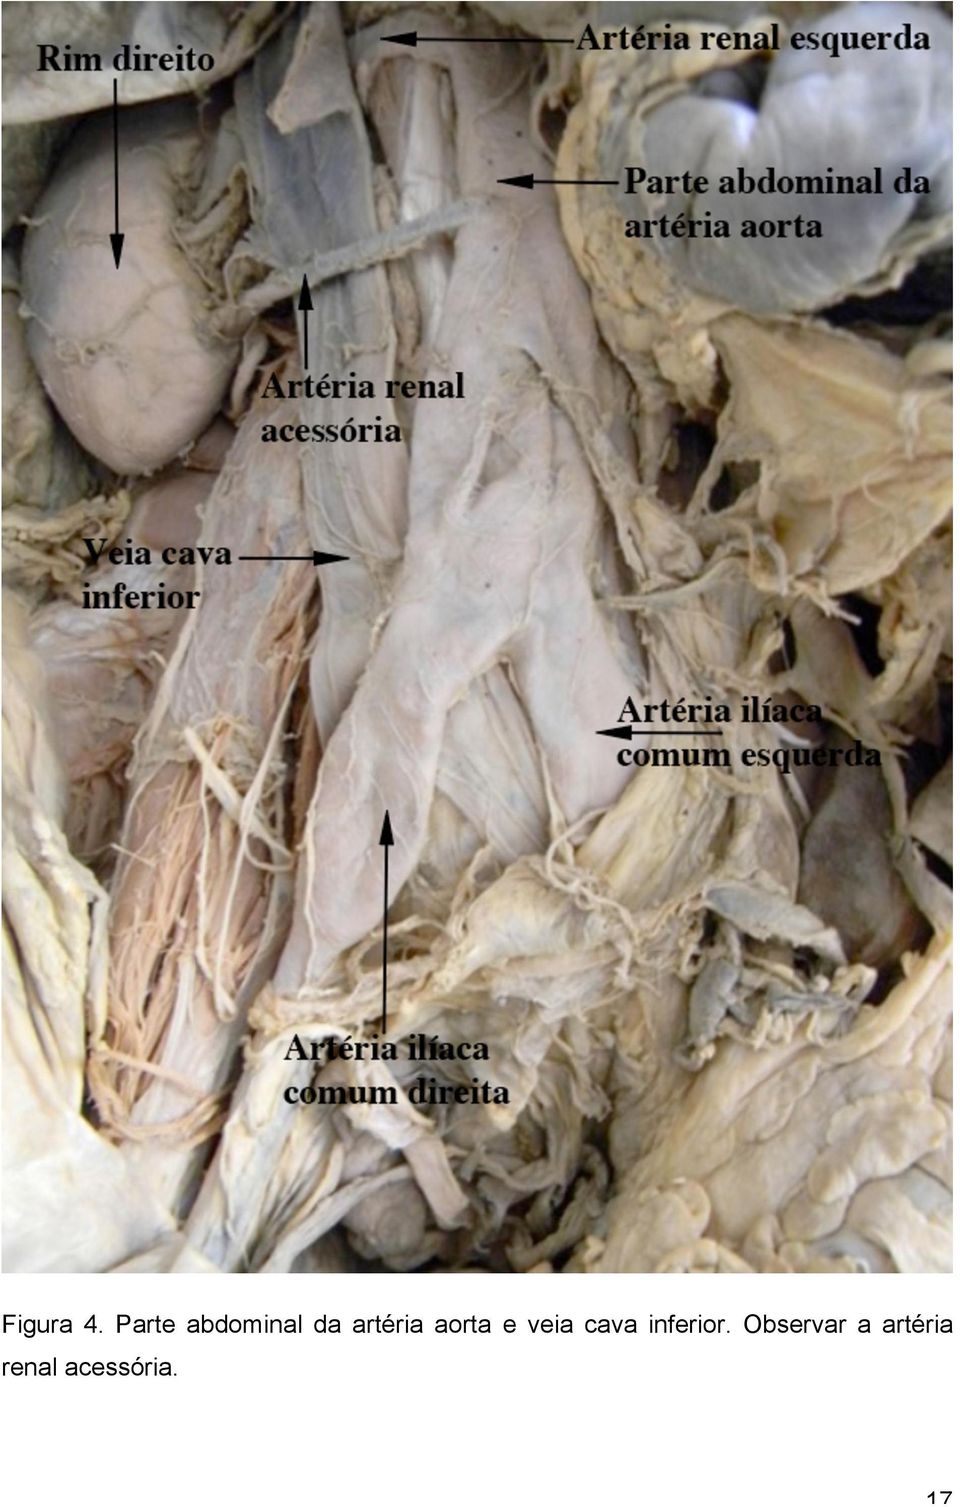 artéria aorta e veia cava